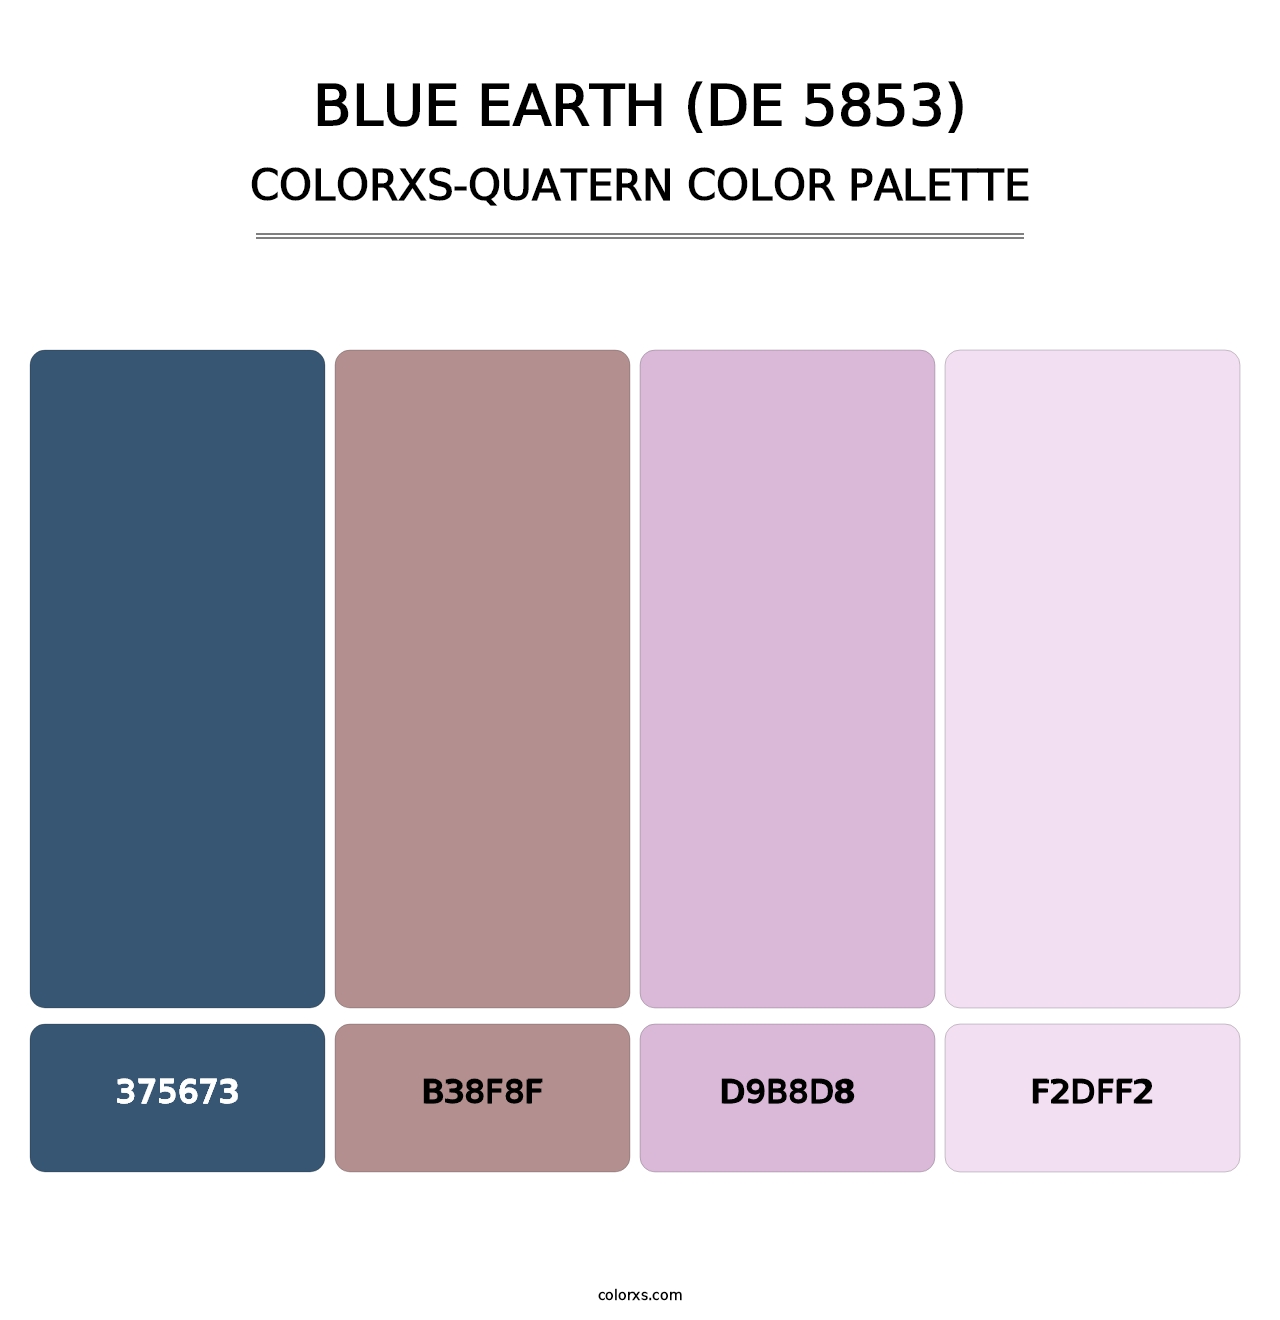 Blue Earth (DE 5853) - Colorxs Quatern Palette